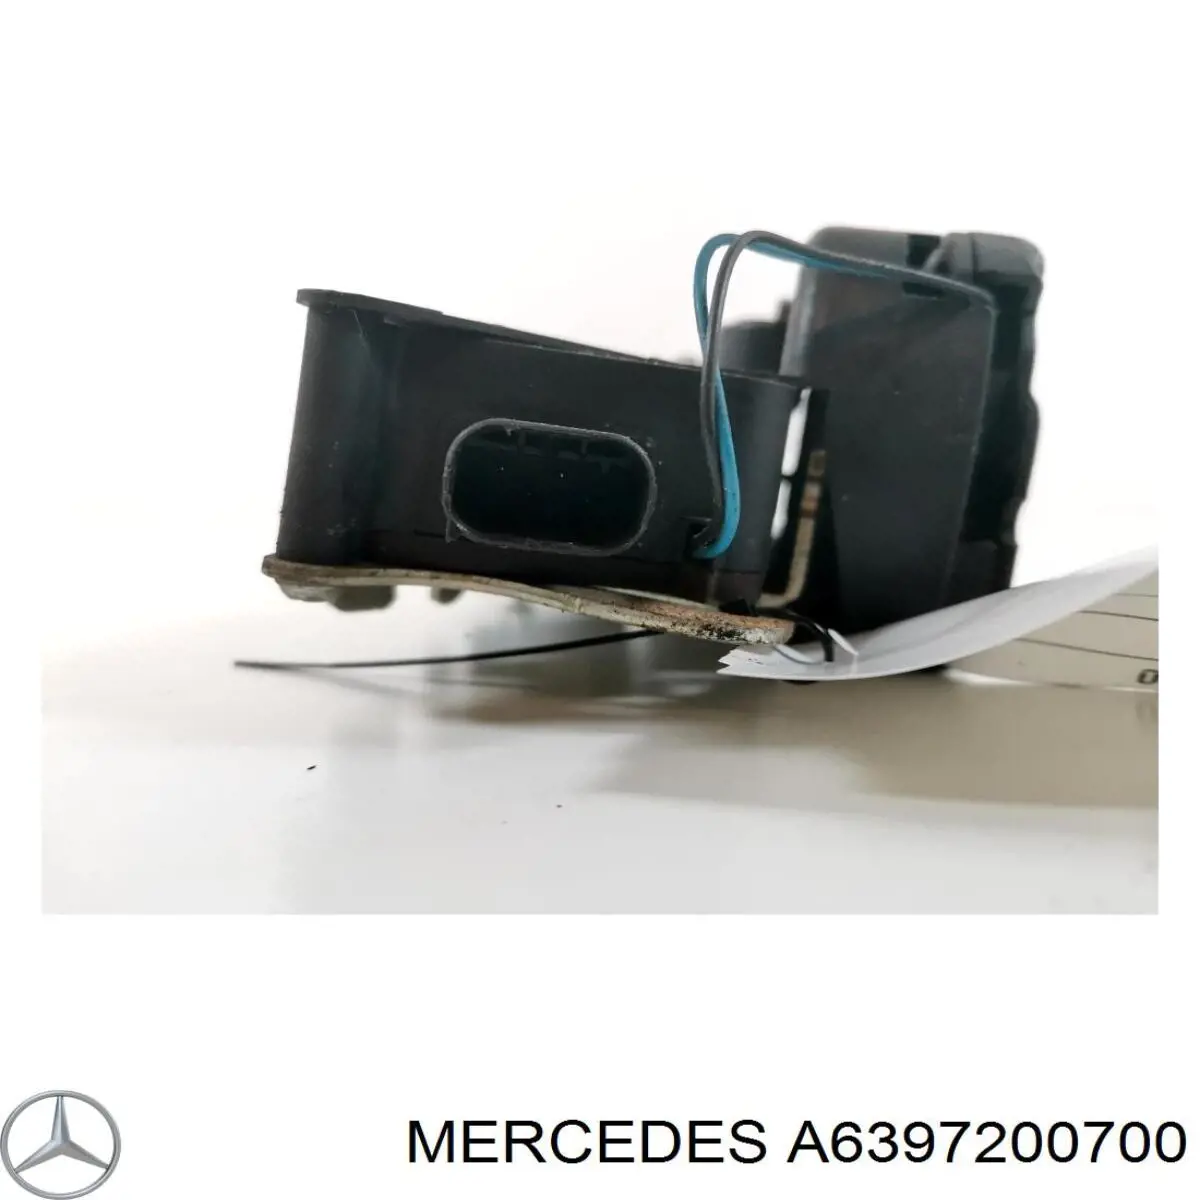 6397201635 Mercedes cerradura de puerta delantera izquierda